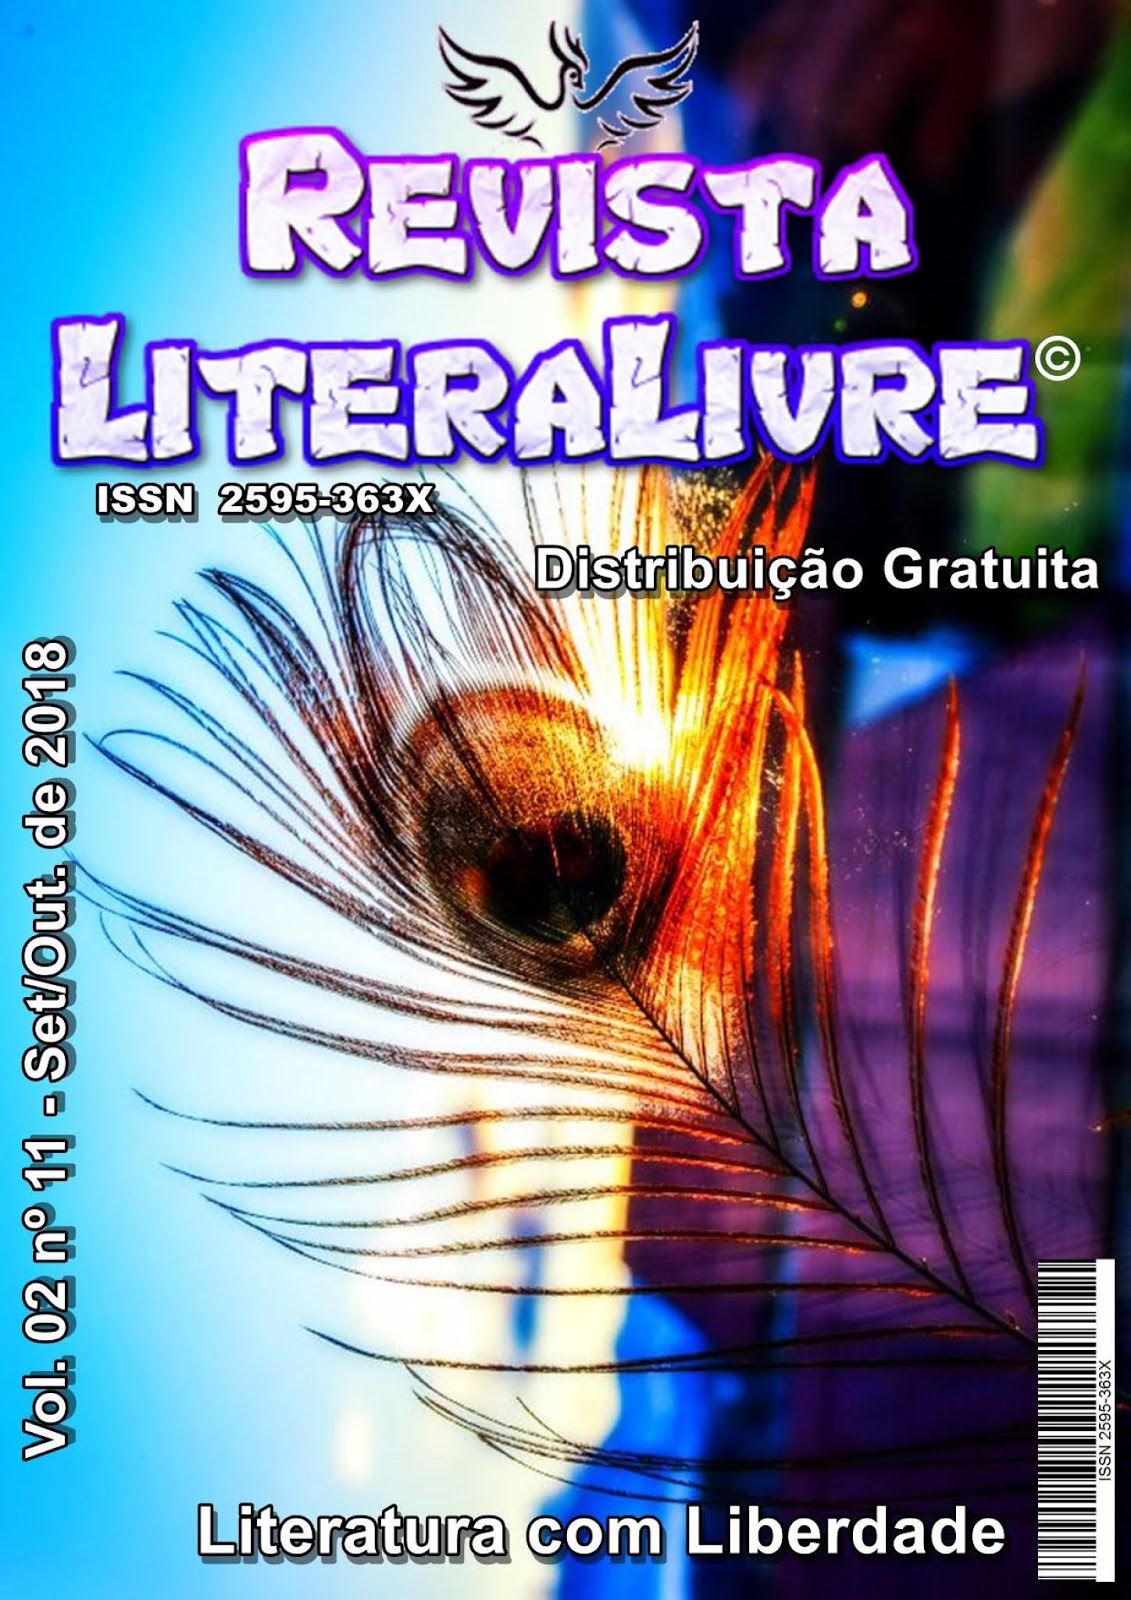 Calaméo - Revista LiteraLivre 27ª Edição